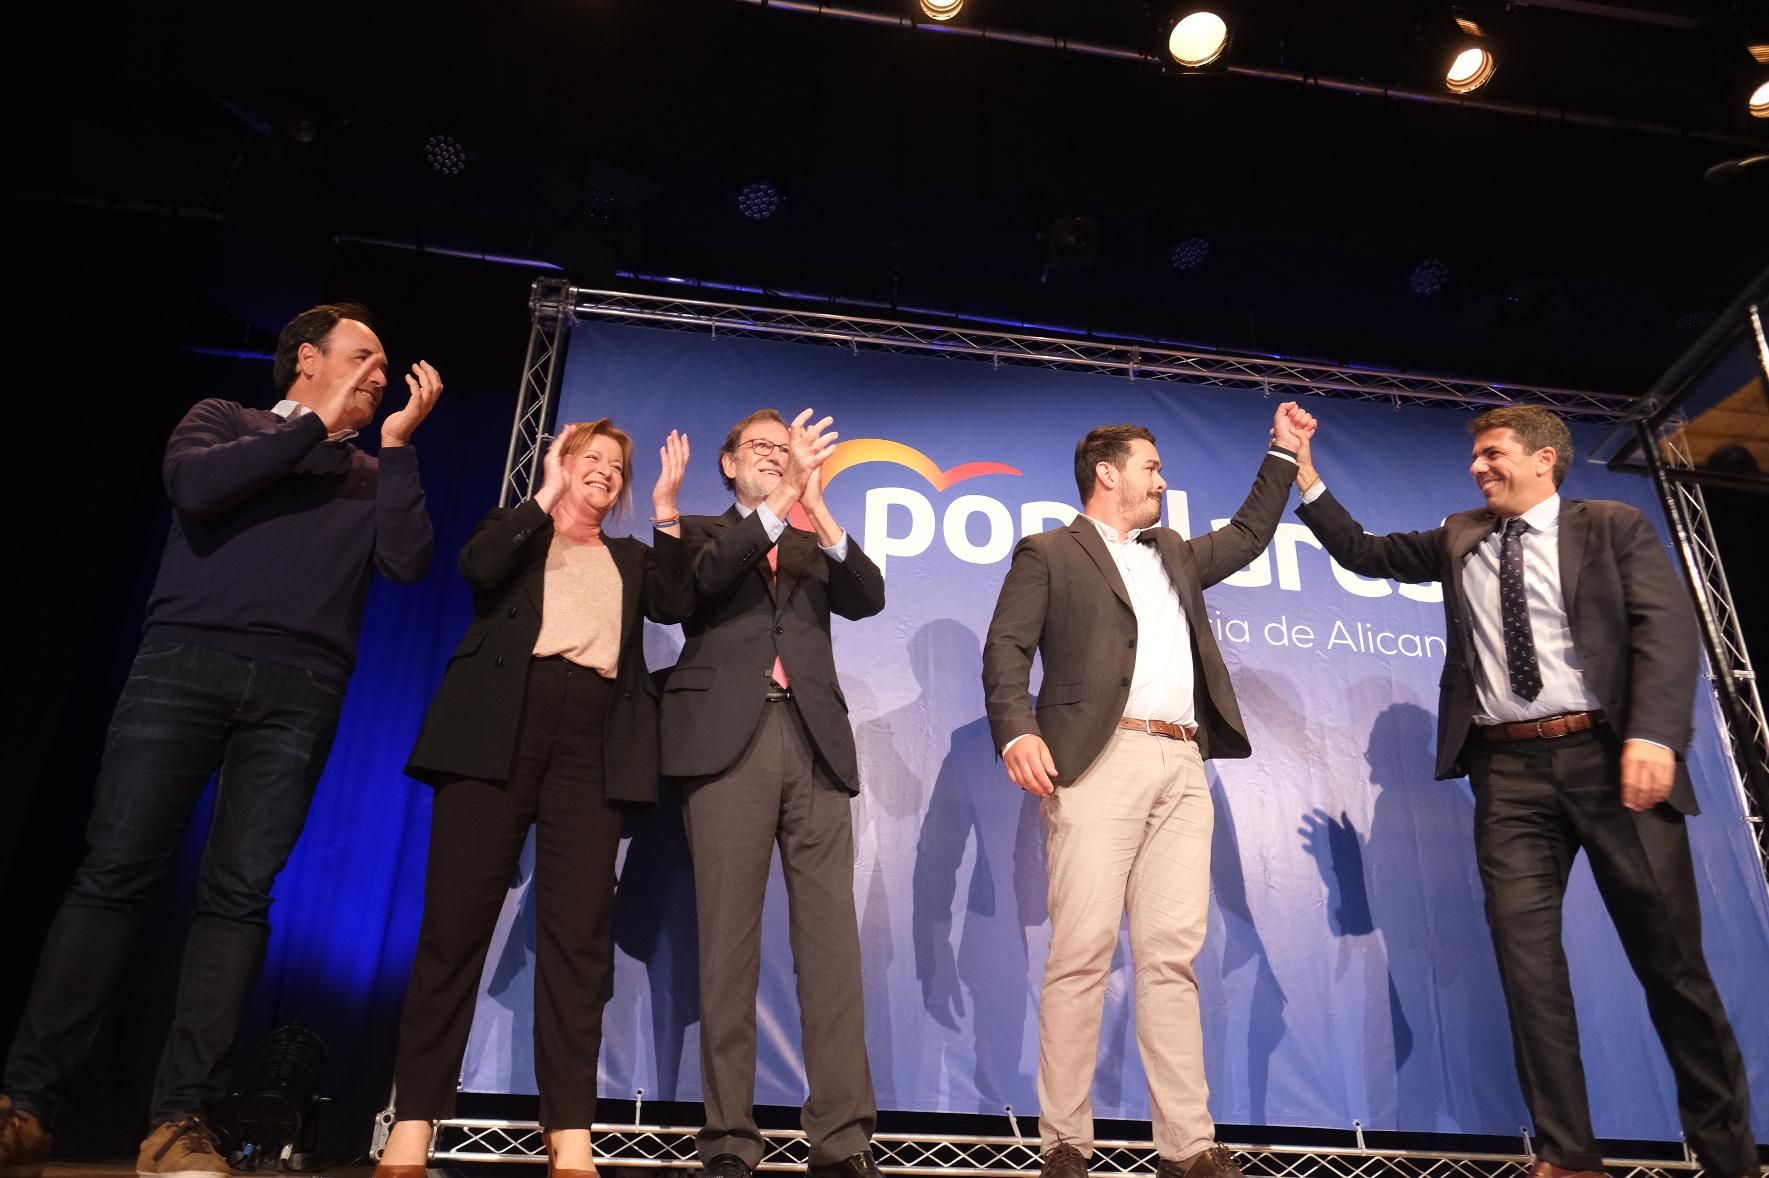 Carlos Mazón levantado la mano del candidato Miguel Ángel Salguero mientras Rajoy aplaude.